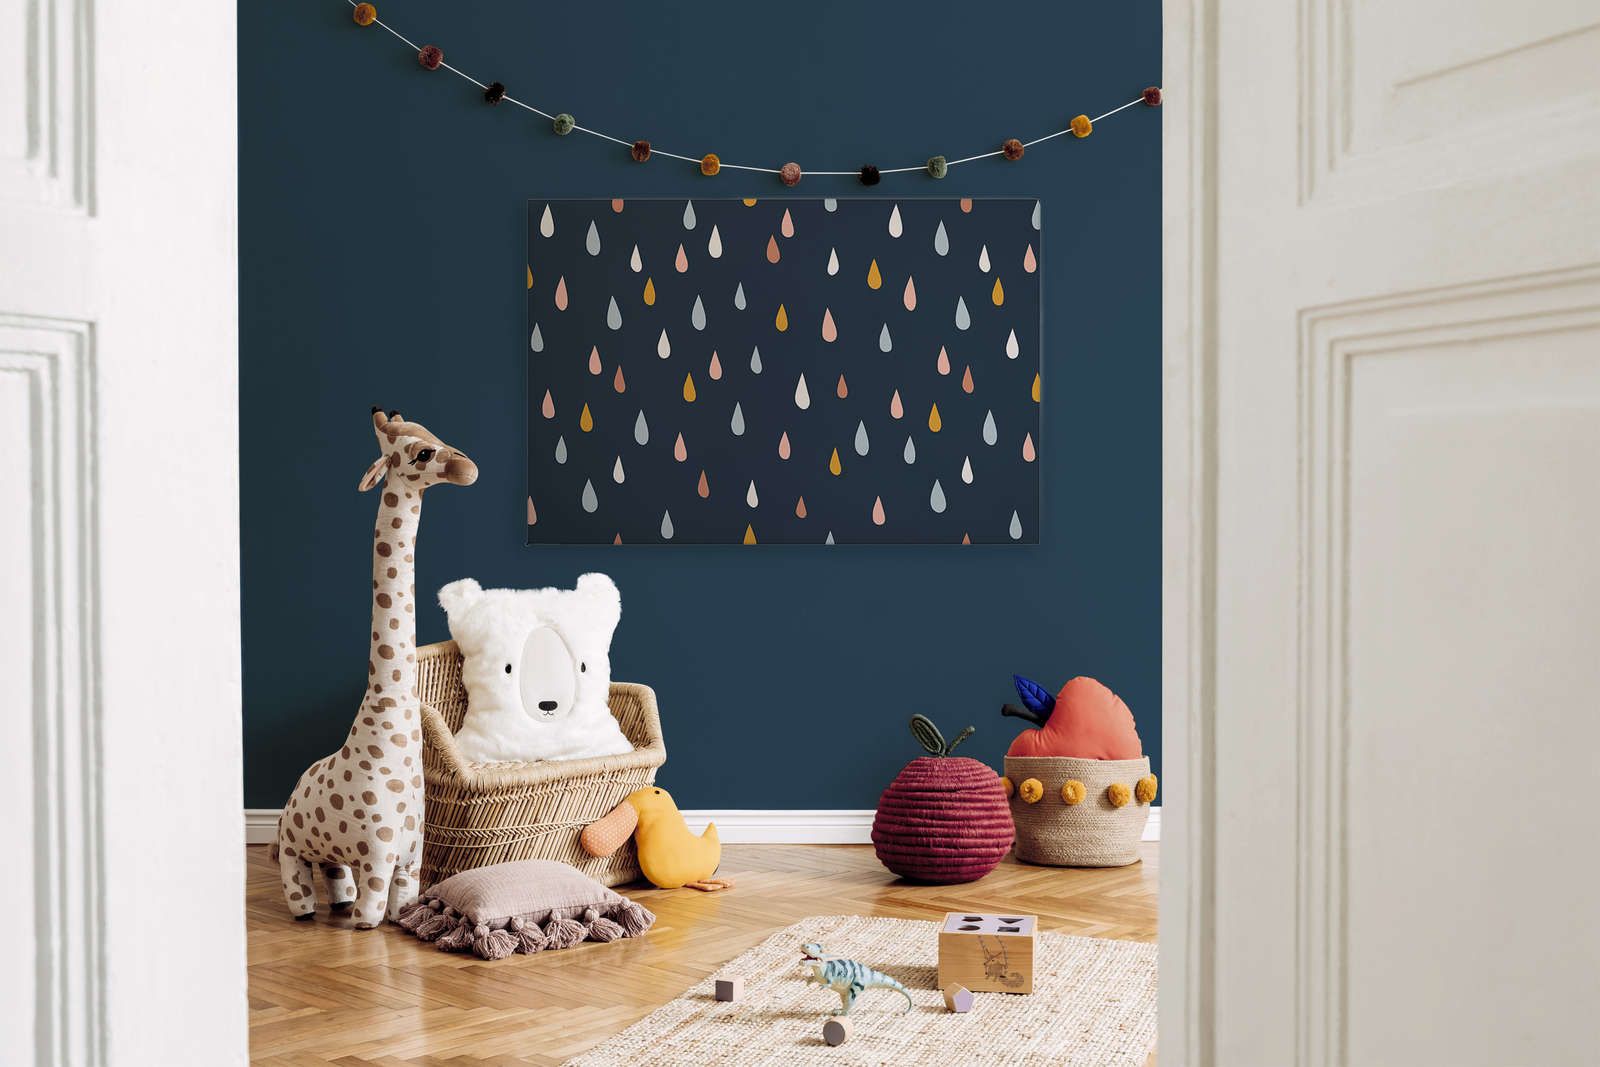             Lienzo para habitación infantil con gotas de colores - 120 cm x 80 cm
        